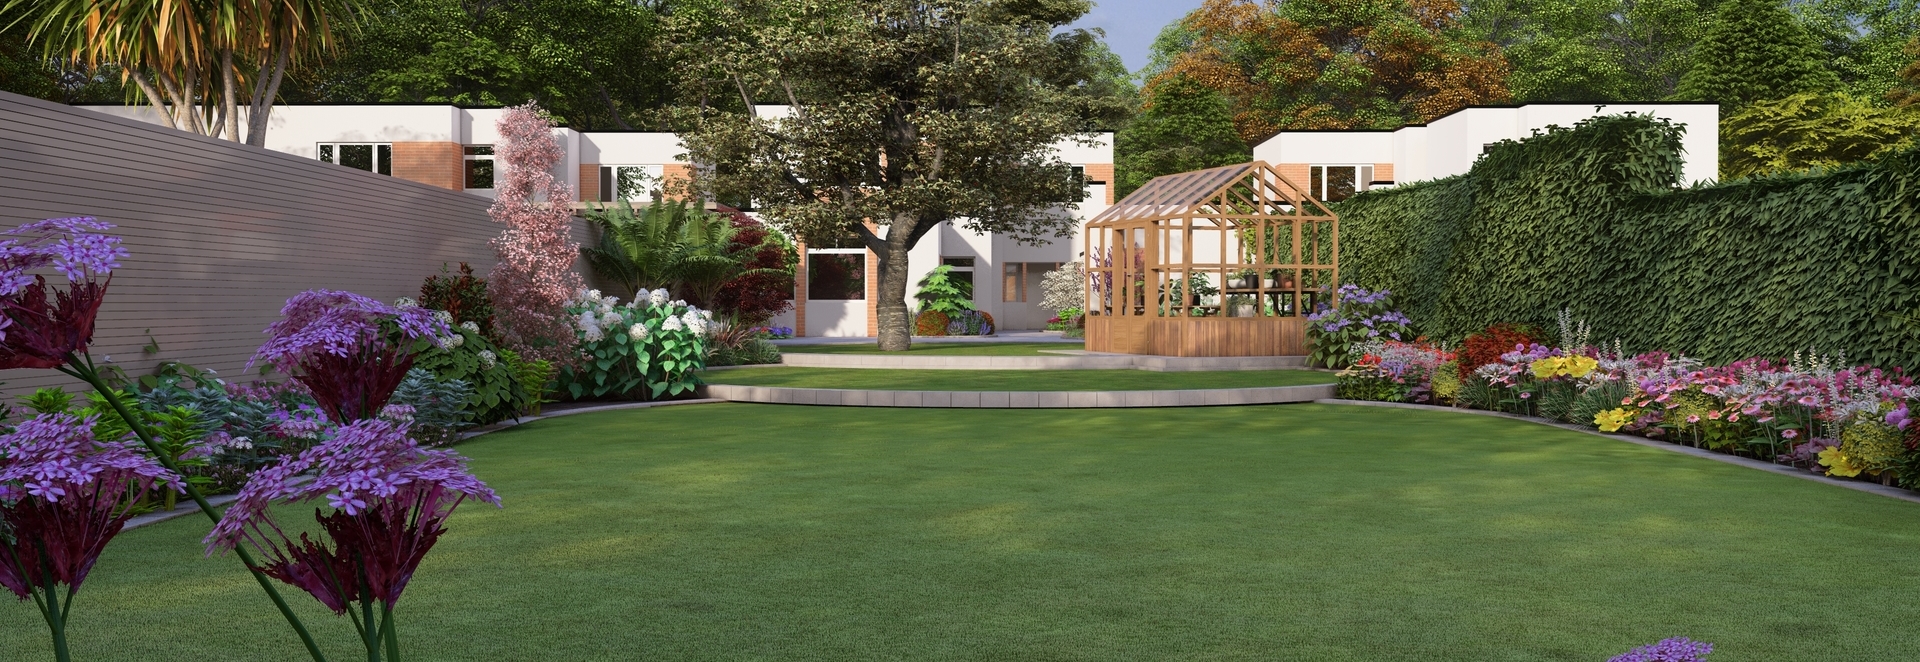 Family Garden Design Clontarf, Dublin 3, with the emphasis on a colourful, versatile & private outdoor space  |  Owen Chubb Garden Design, Tel 087-2306 128